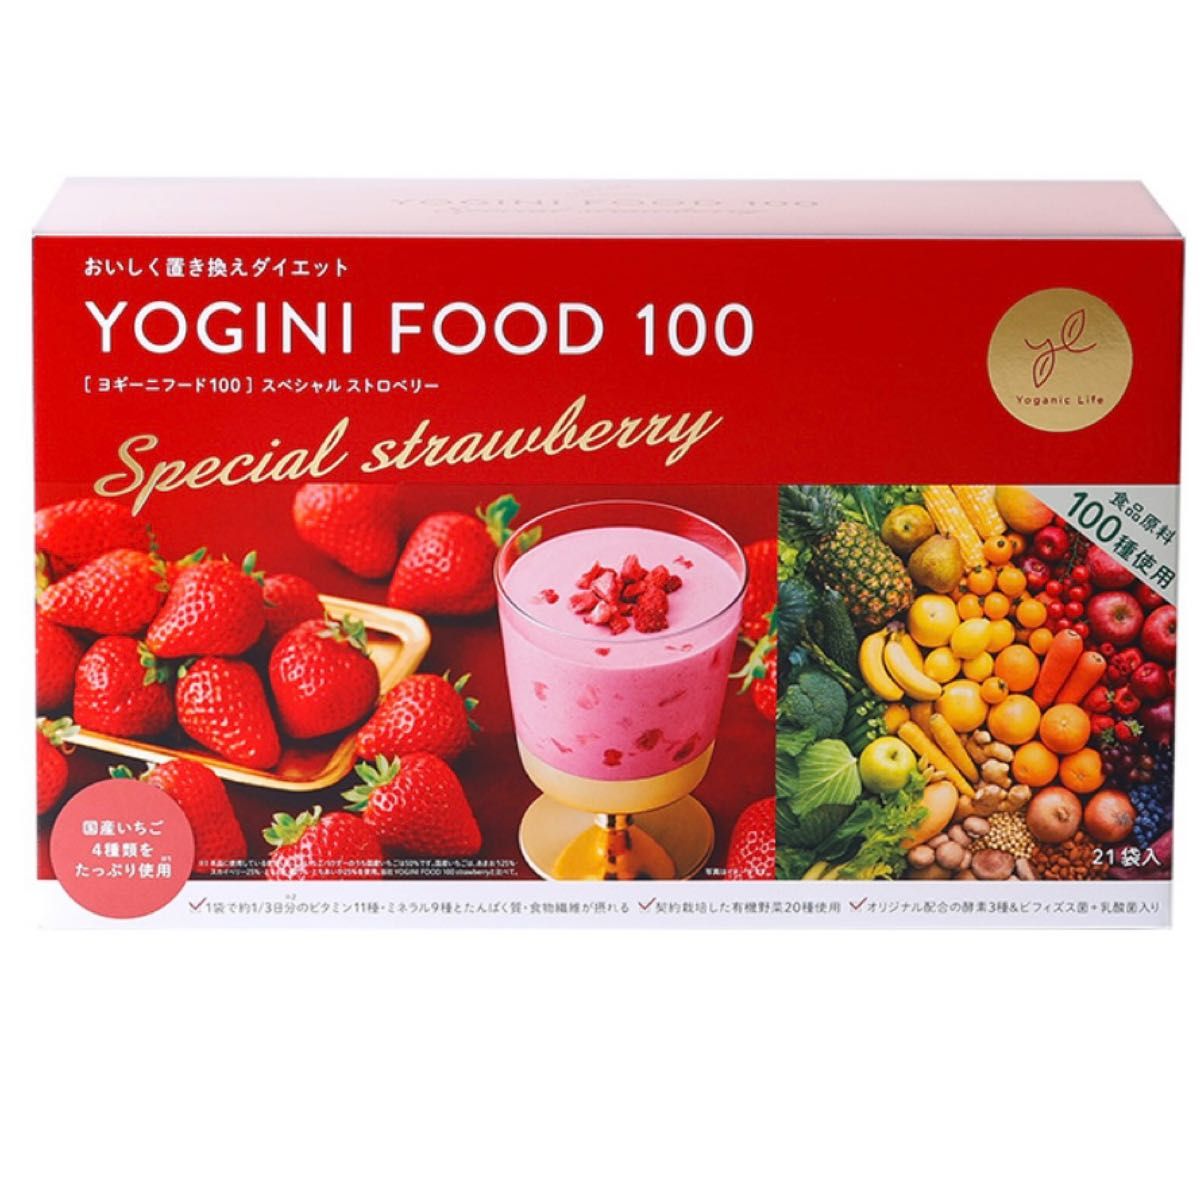 ヨギーニフード100 - ダイエット食品